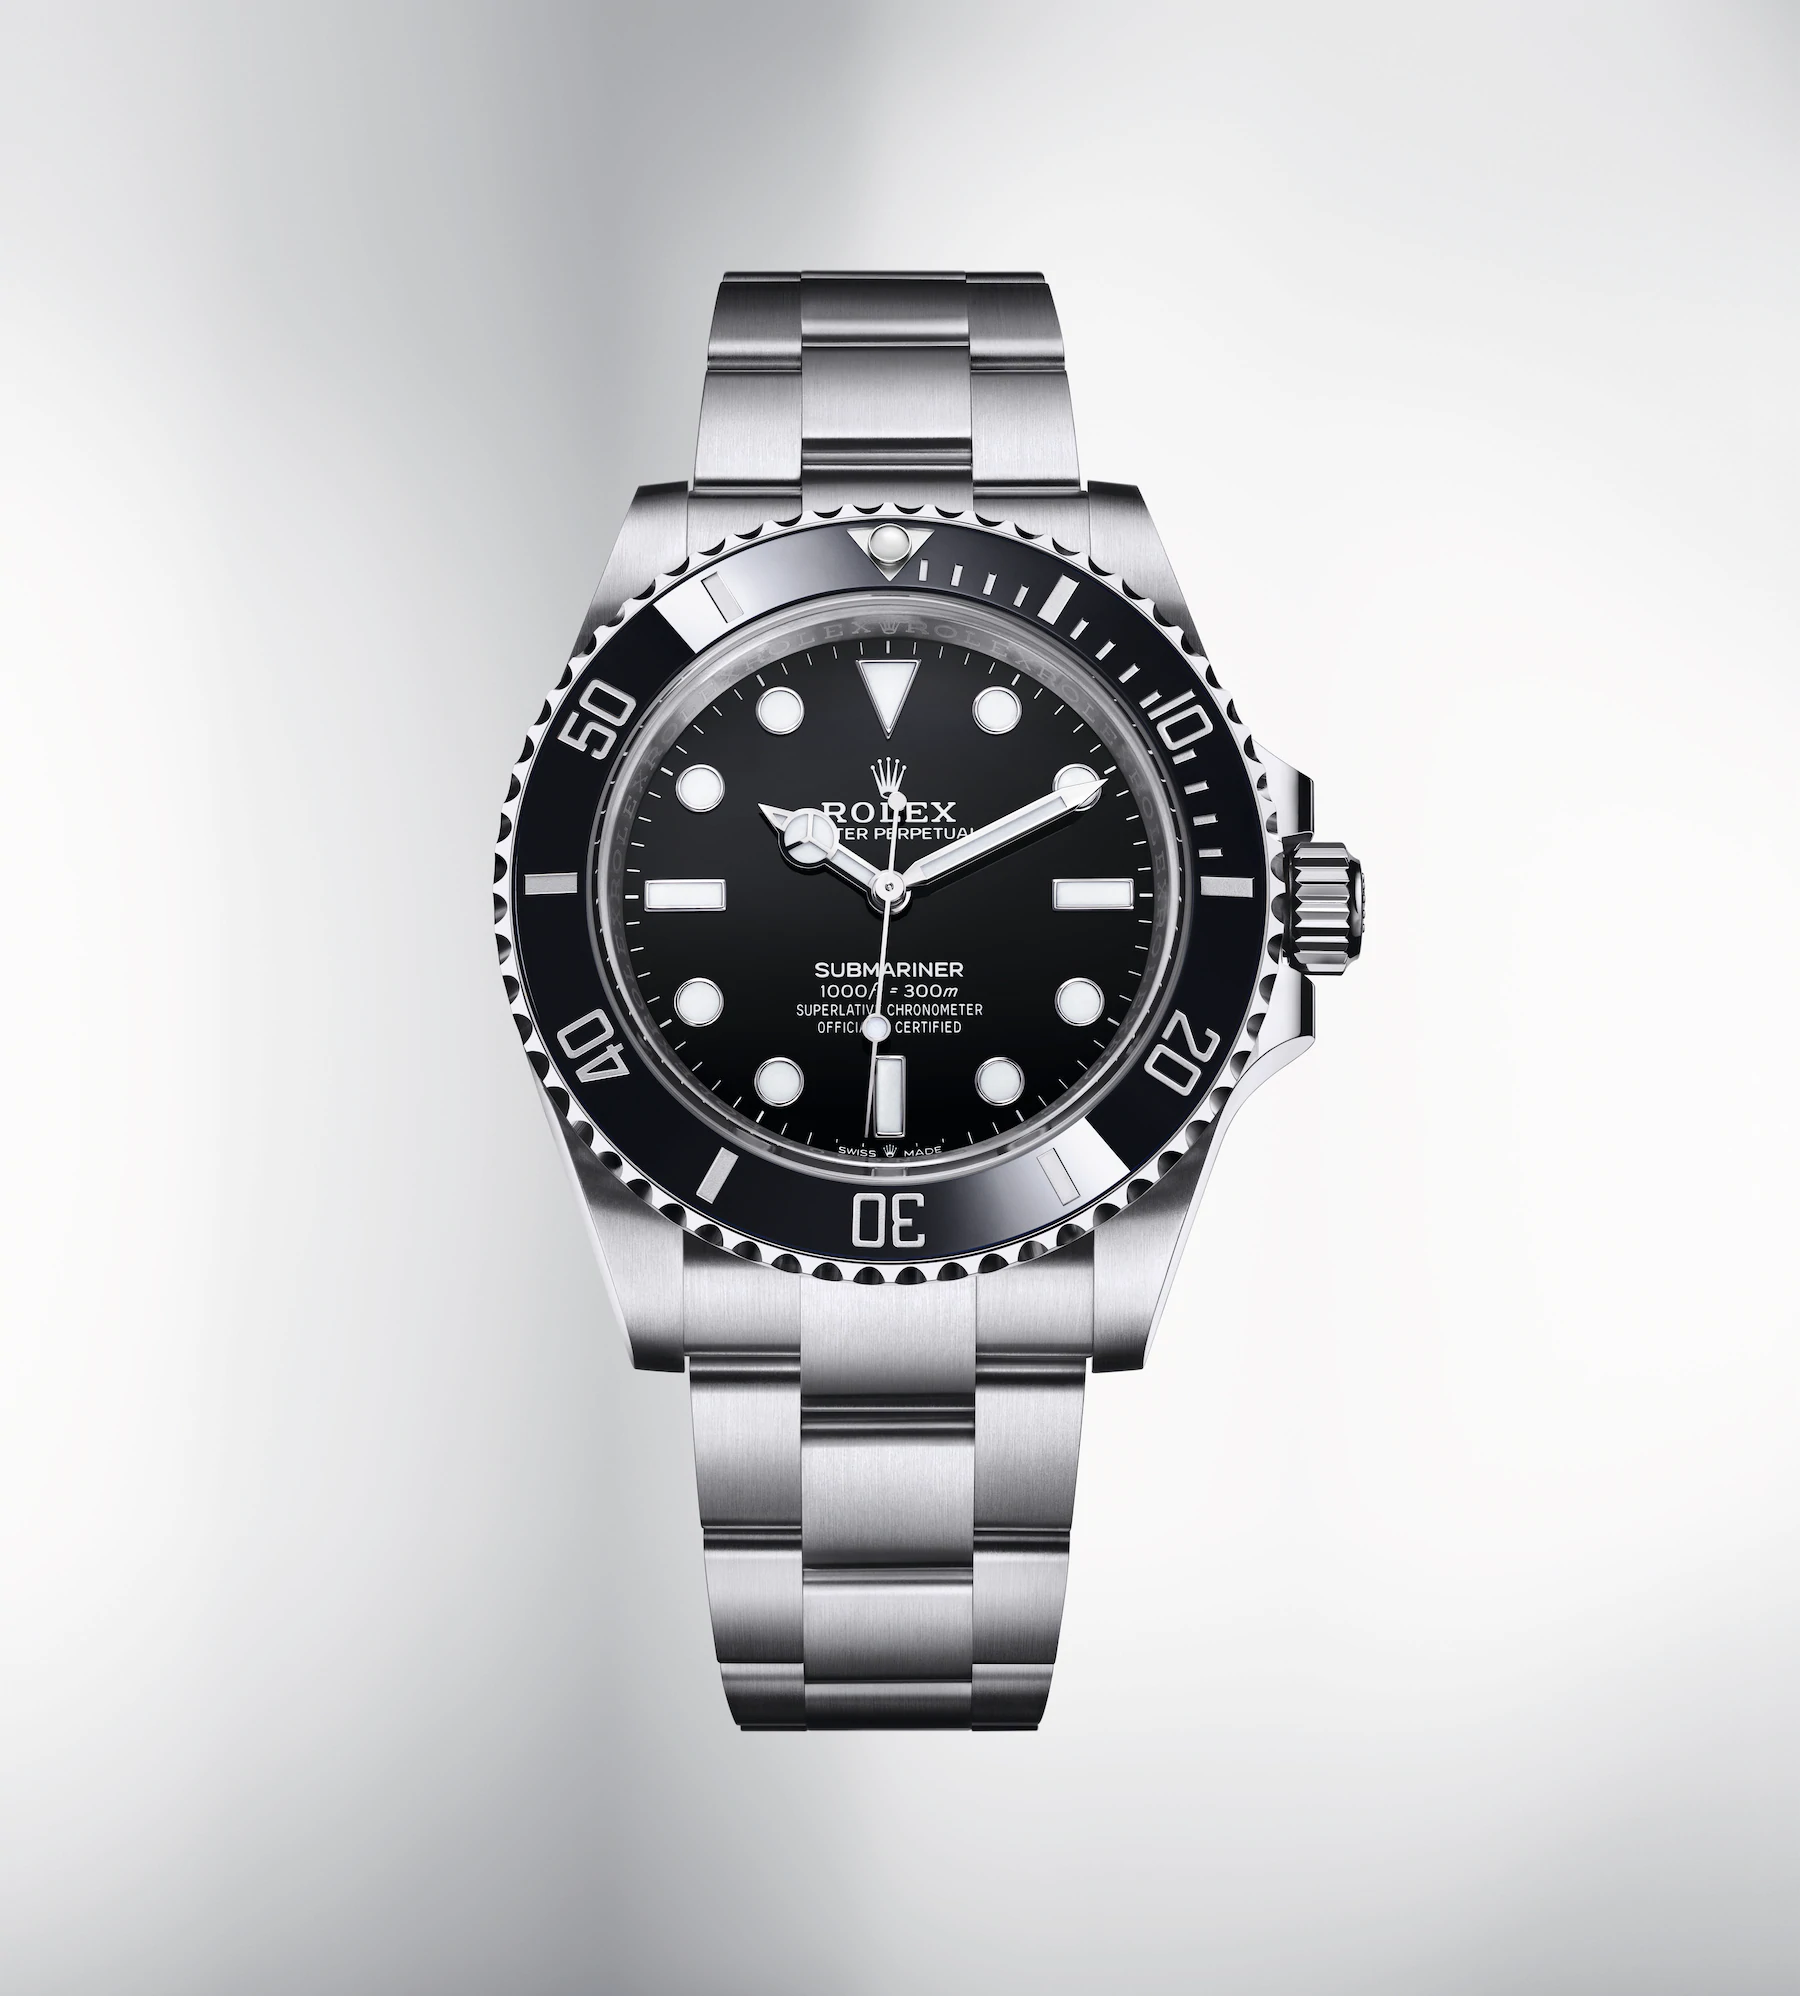 Rolex Submariner 2020 watch